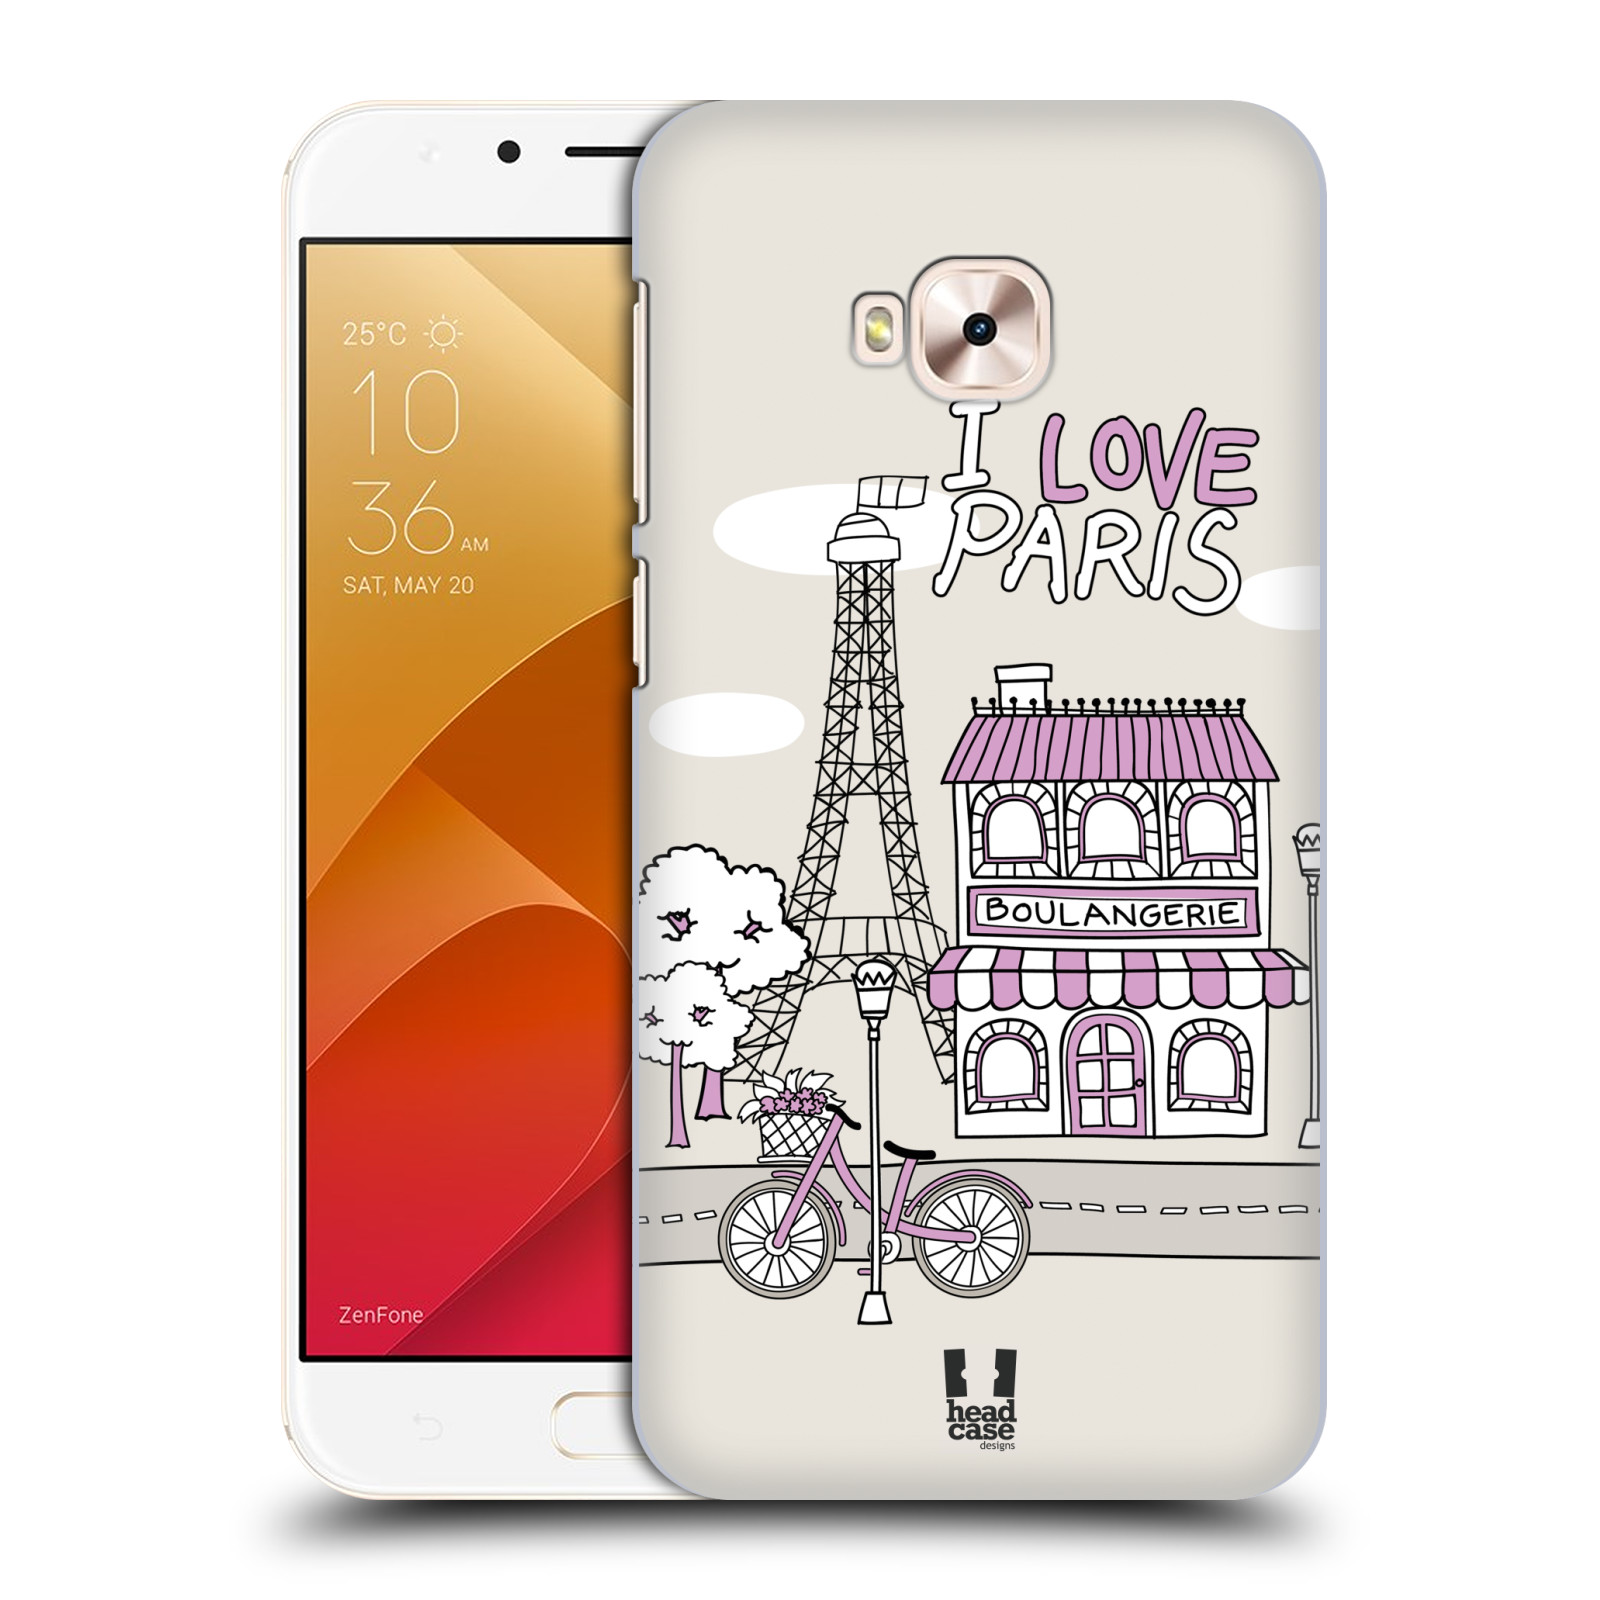 HEAD CASE plastový obal na mobil Asus Zenfone 4 Selfie Pro ZD552KL vzor Kreslená městečka FIALOVÁ, Paříž, Francie, I LOVE PARIS